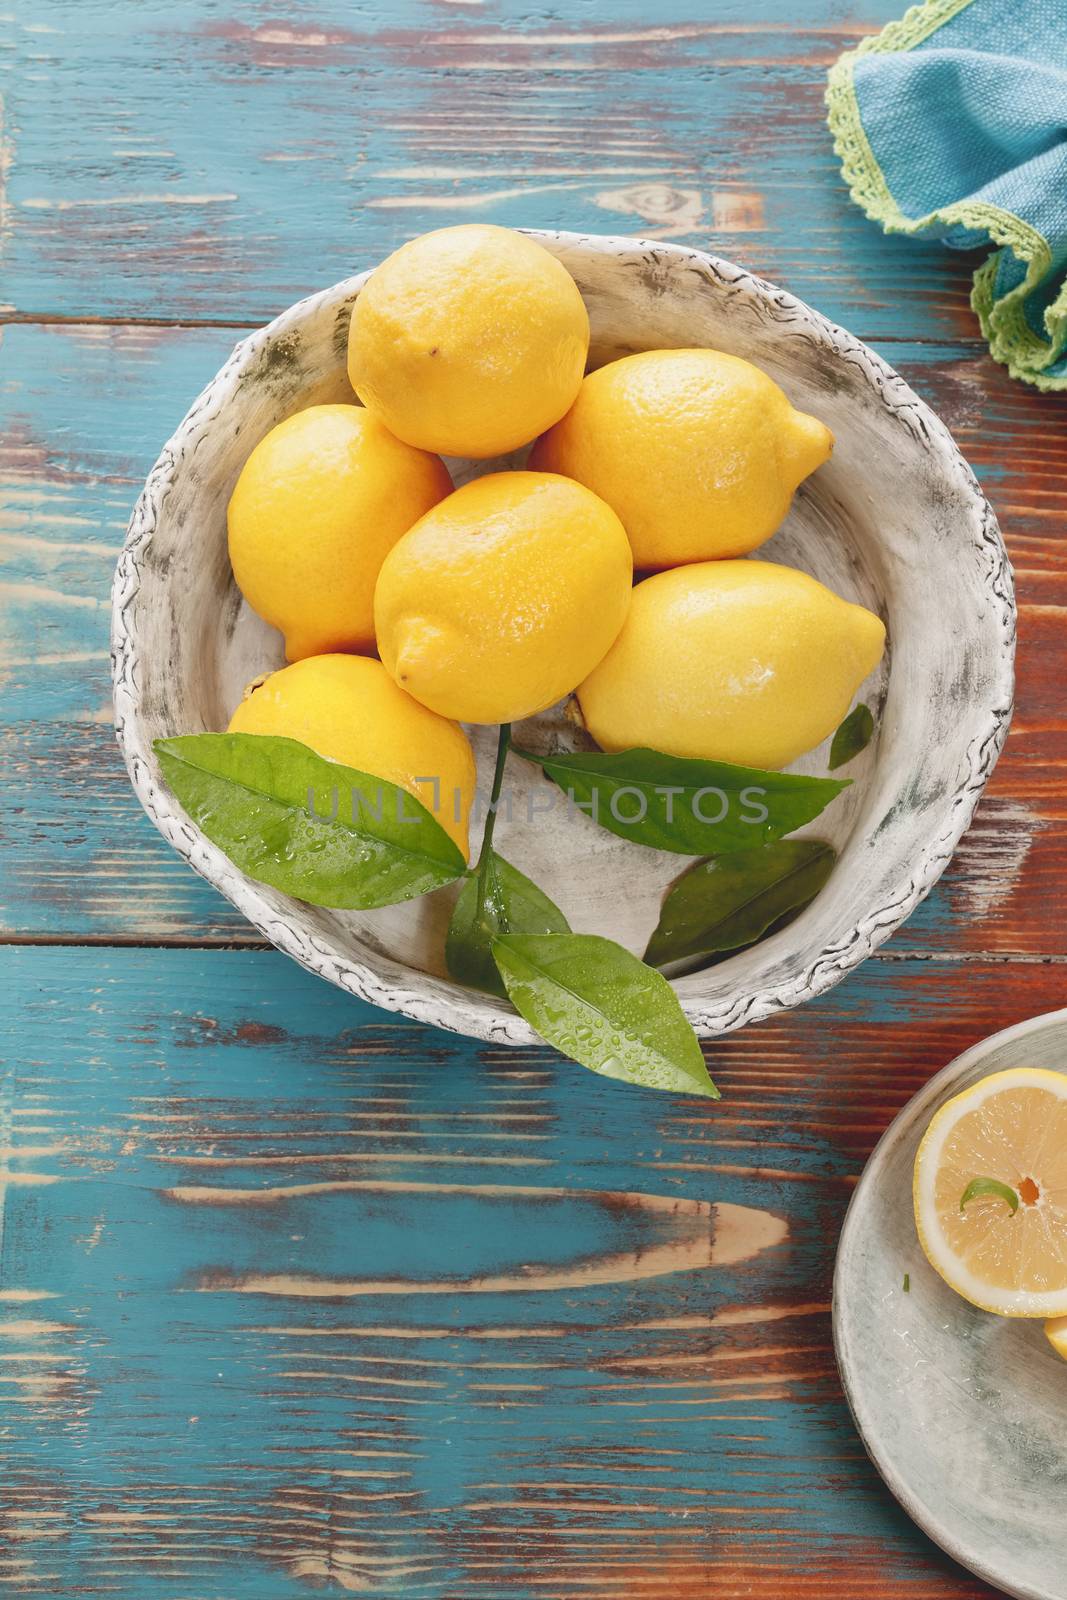 Lemons. by Slast20